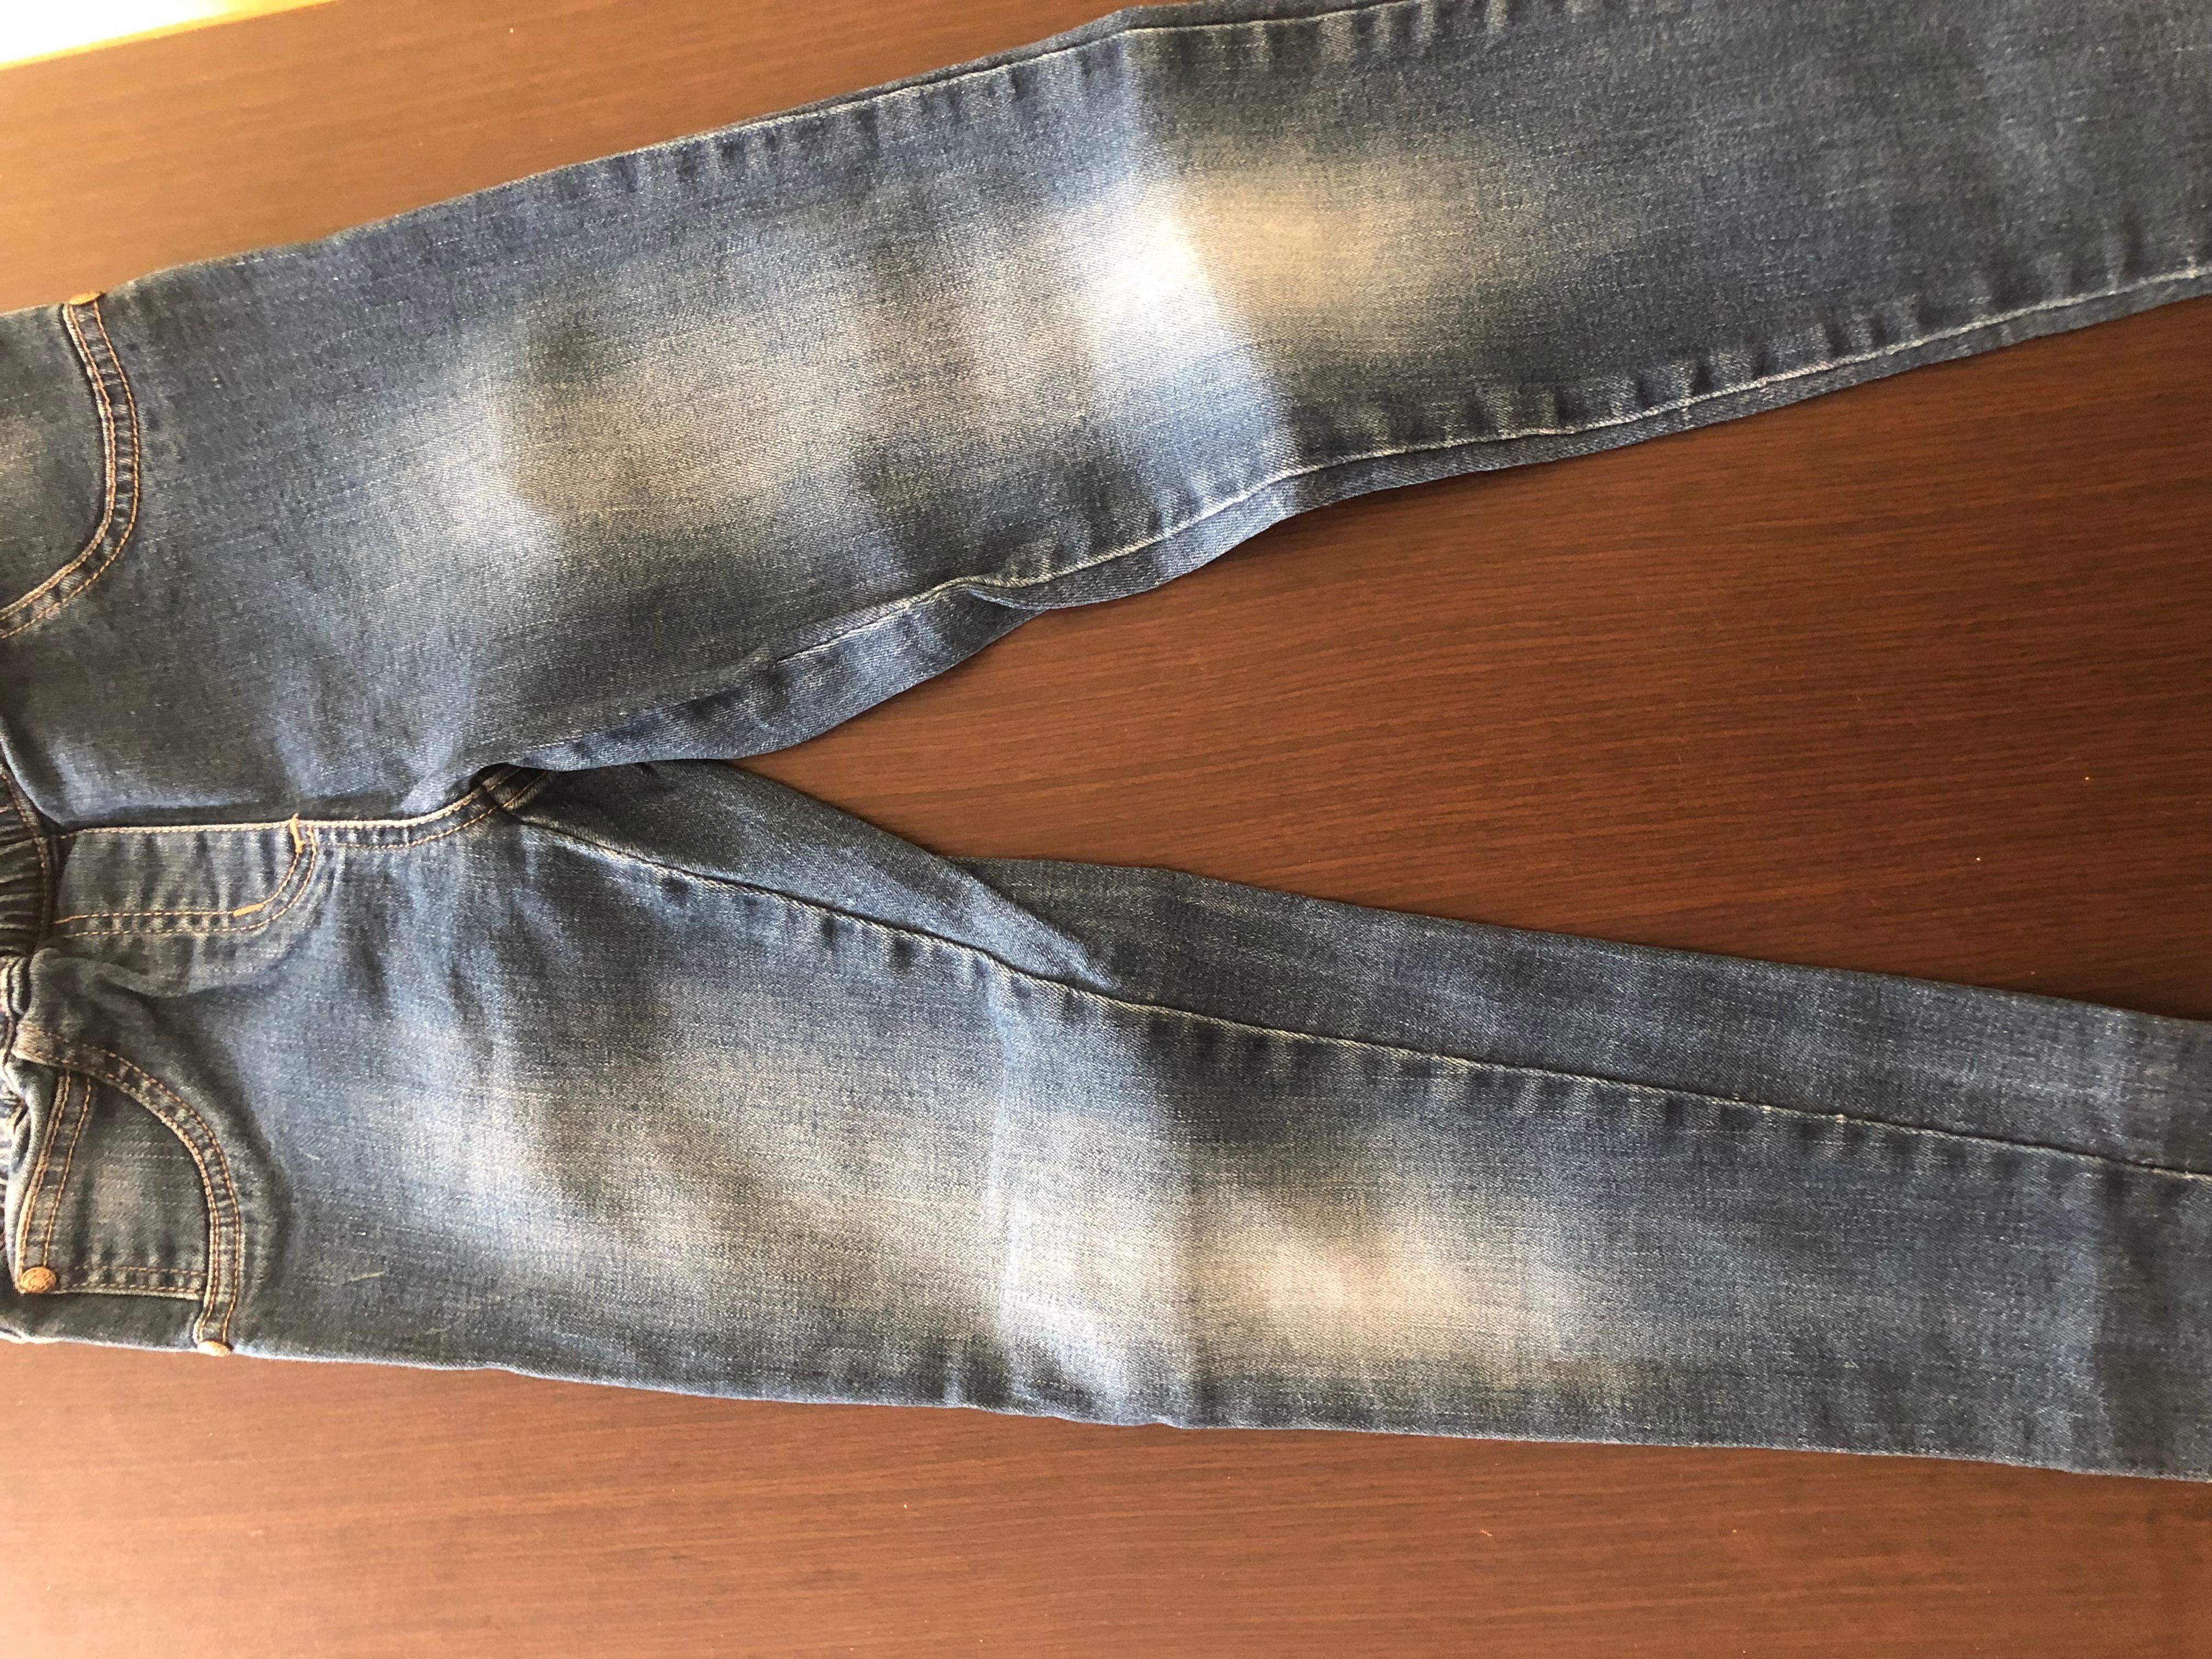 Spodnie jeansowe dla chłopca r.134